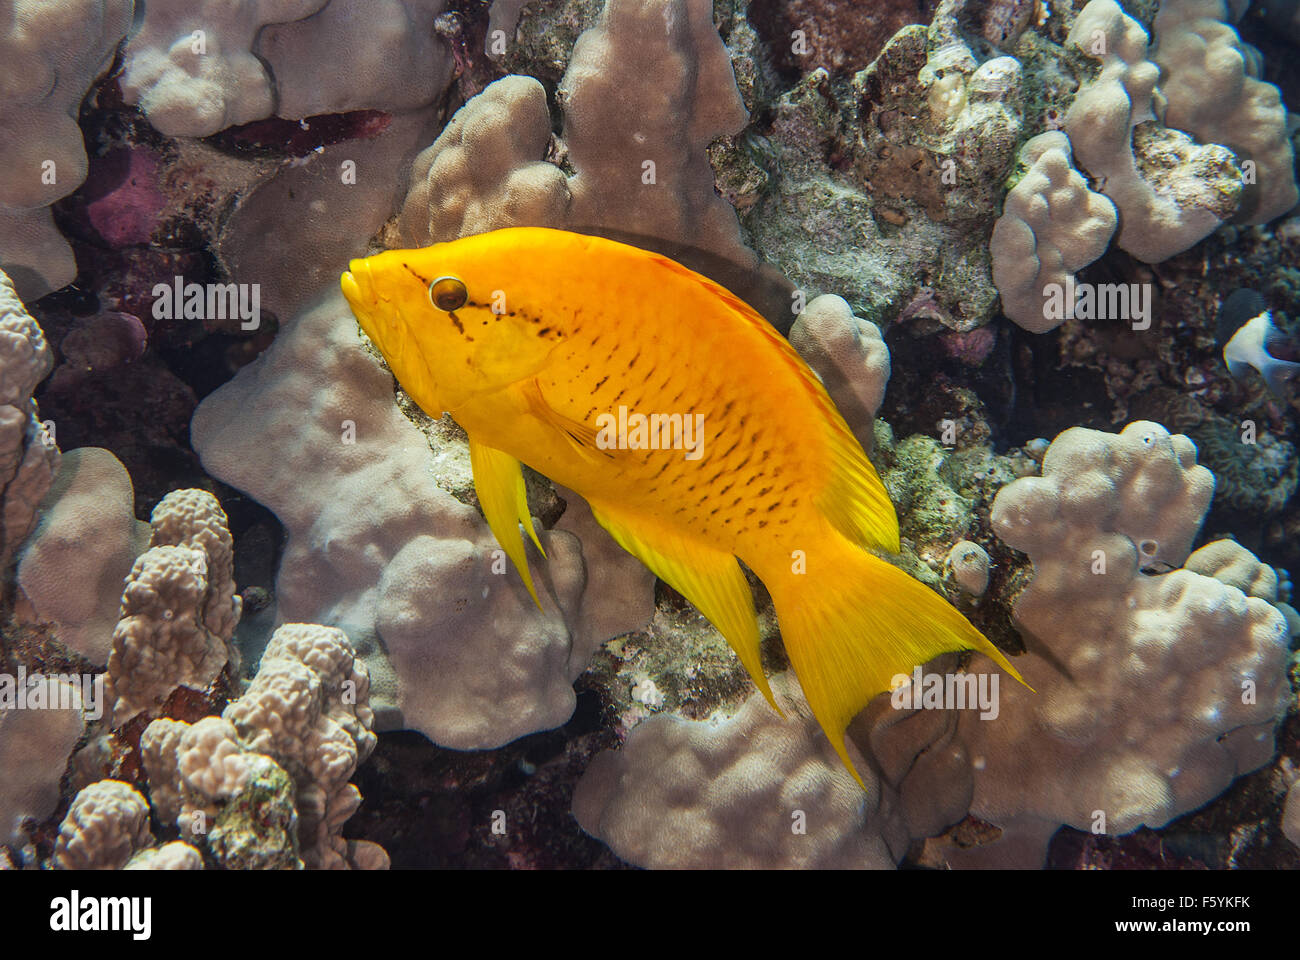 Young Sling-jaw wrasse, Epibulus insidiator, Labridae, Sharm el Sheikh, Red Sea, Egypt Stock Photo